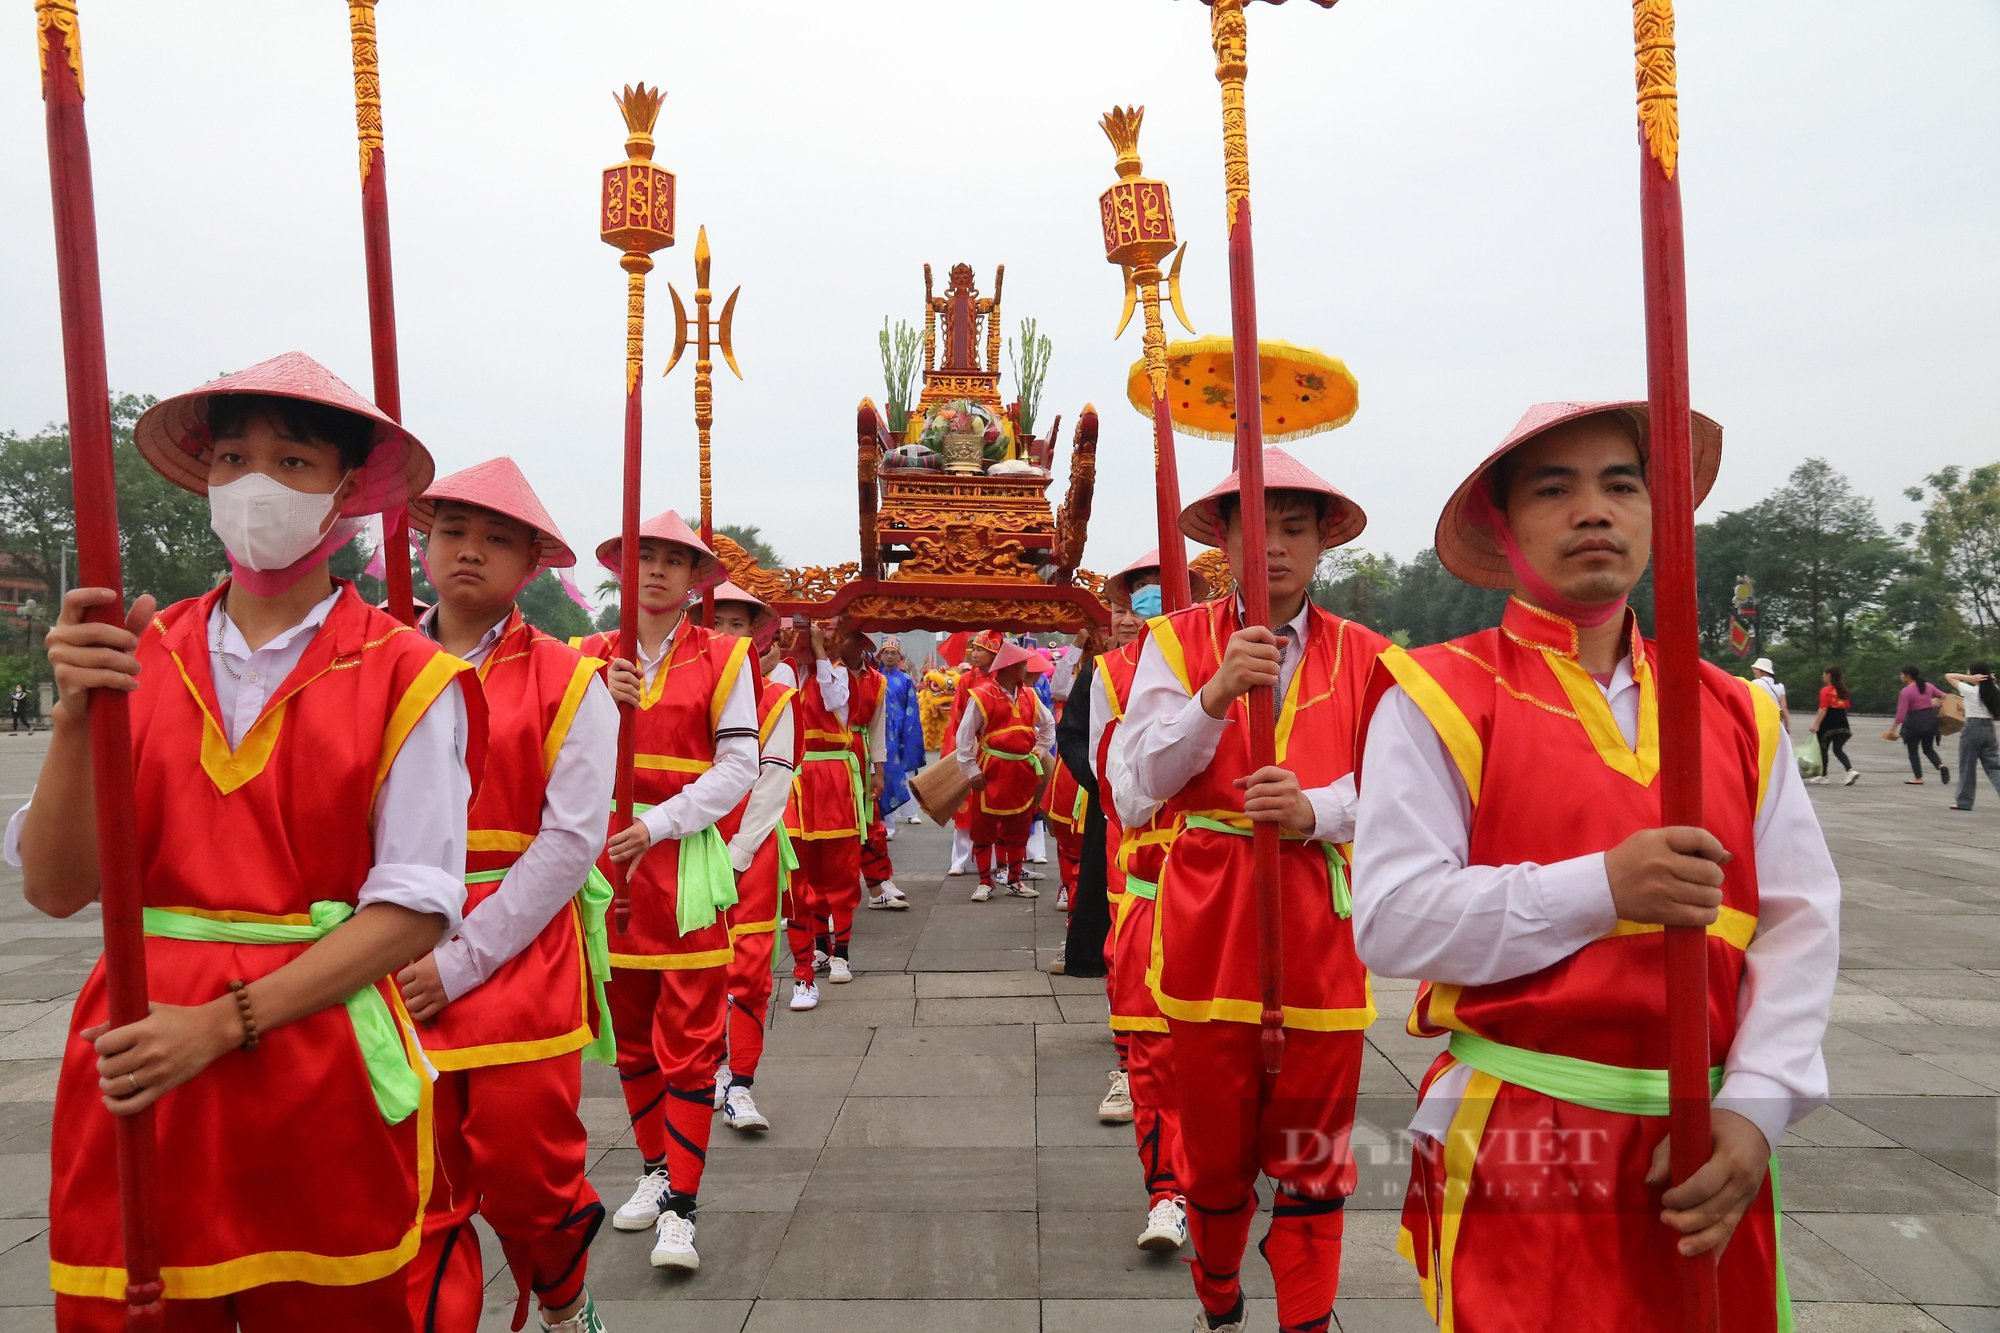 Hơn 1000 nghìn người trang phục lộng lẫy, bạt ngàn cờ, hoa, rước kiệu về Đền Hùng - Ảnh 3.